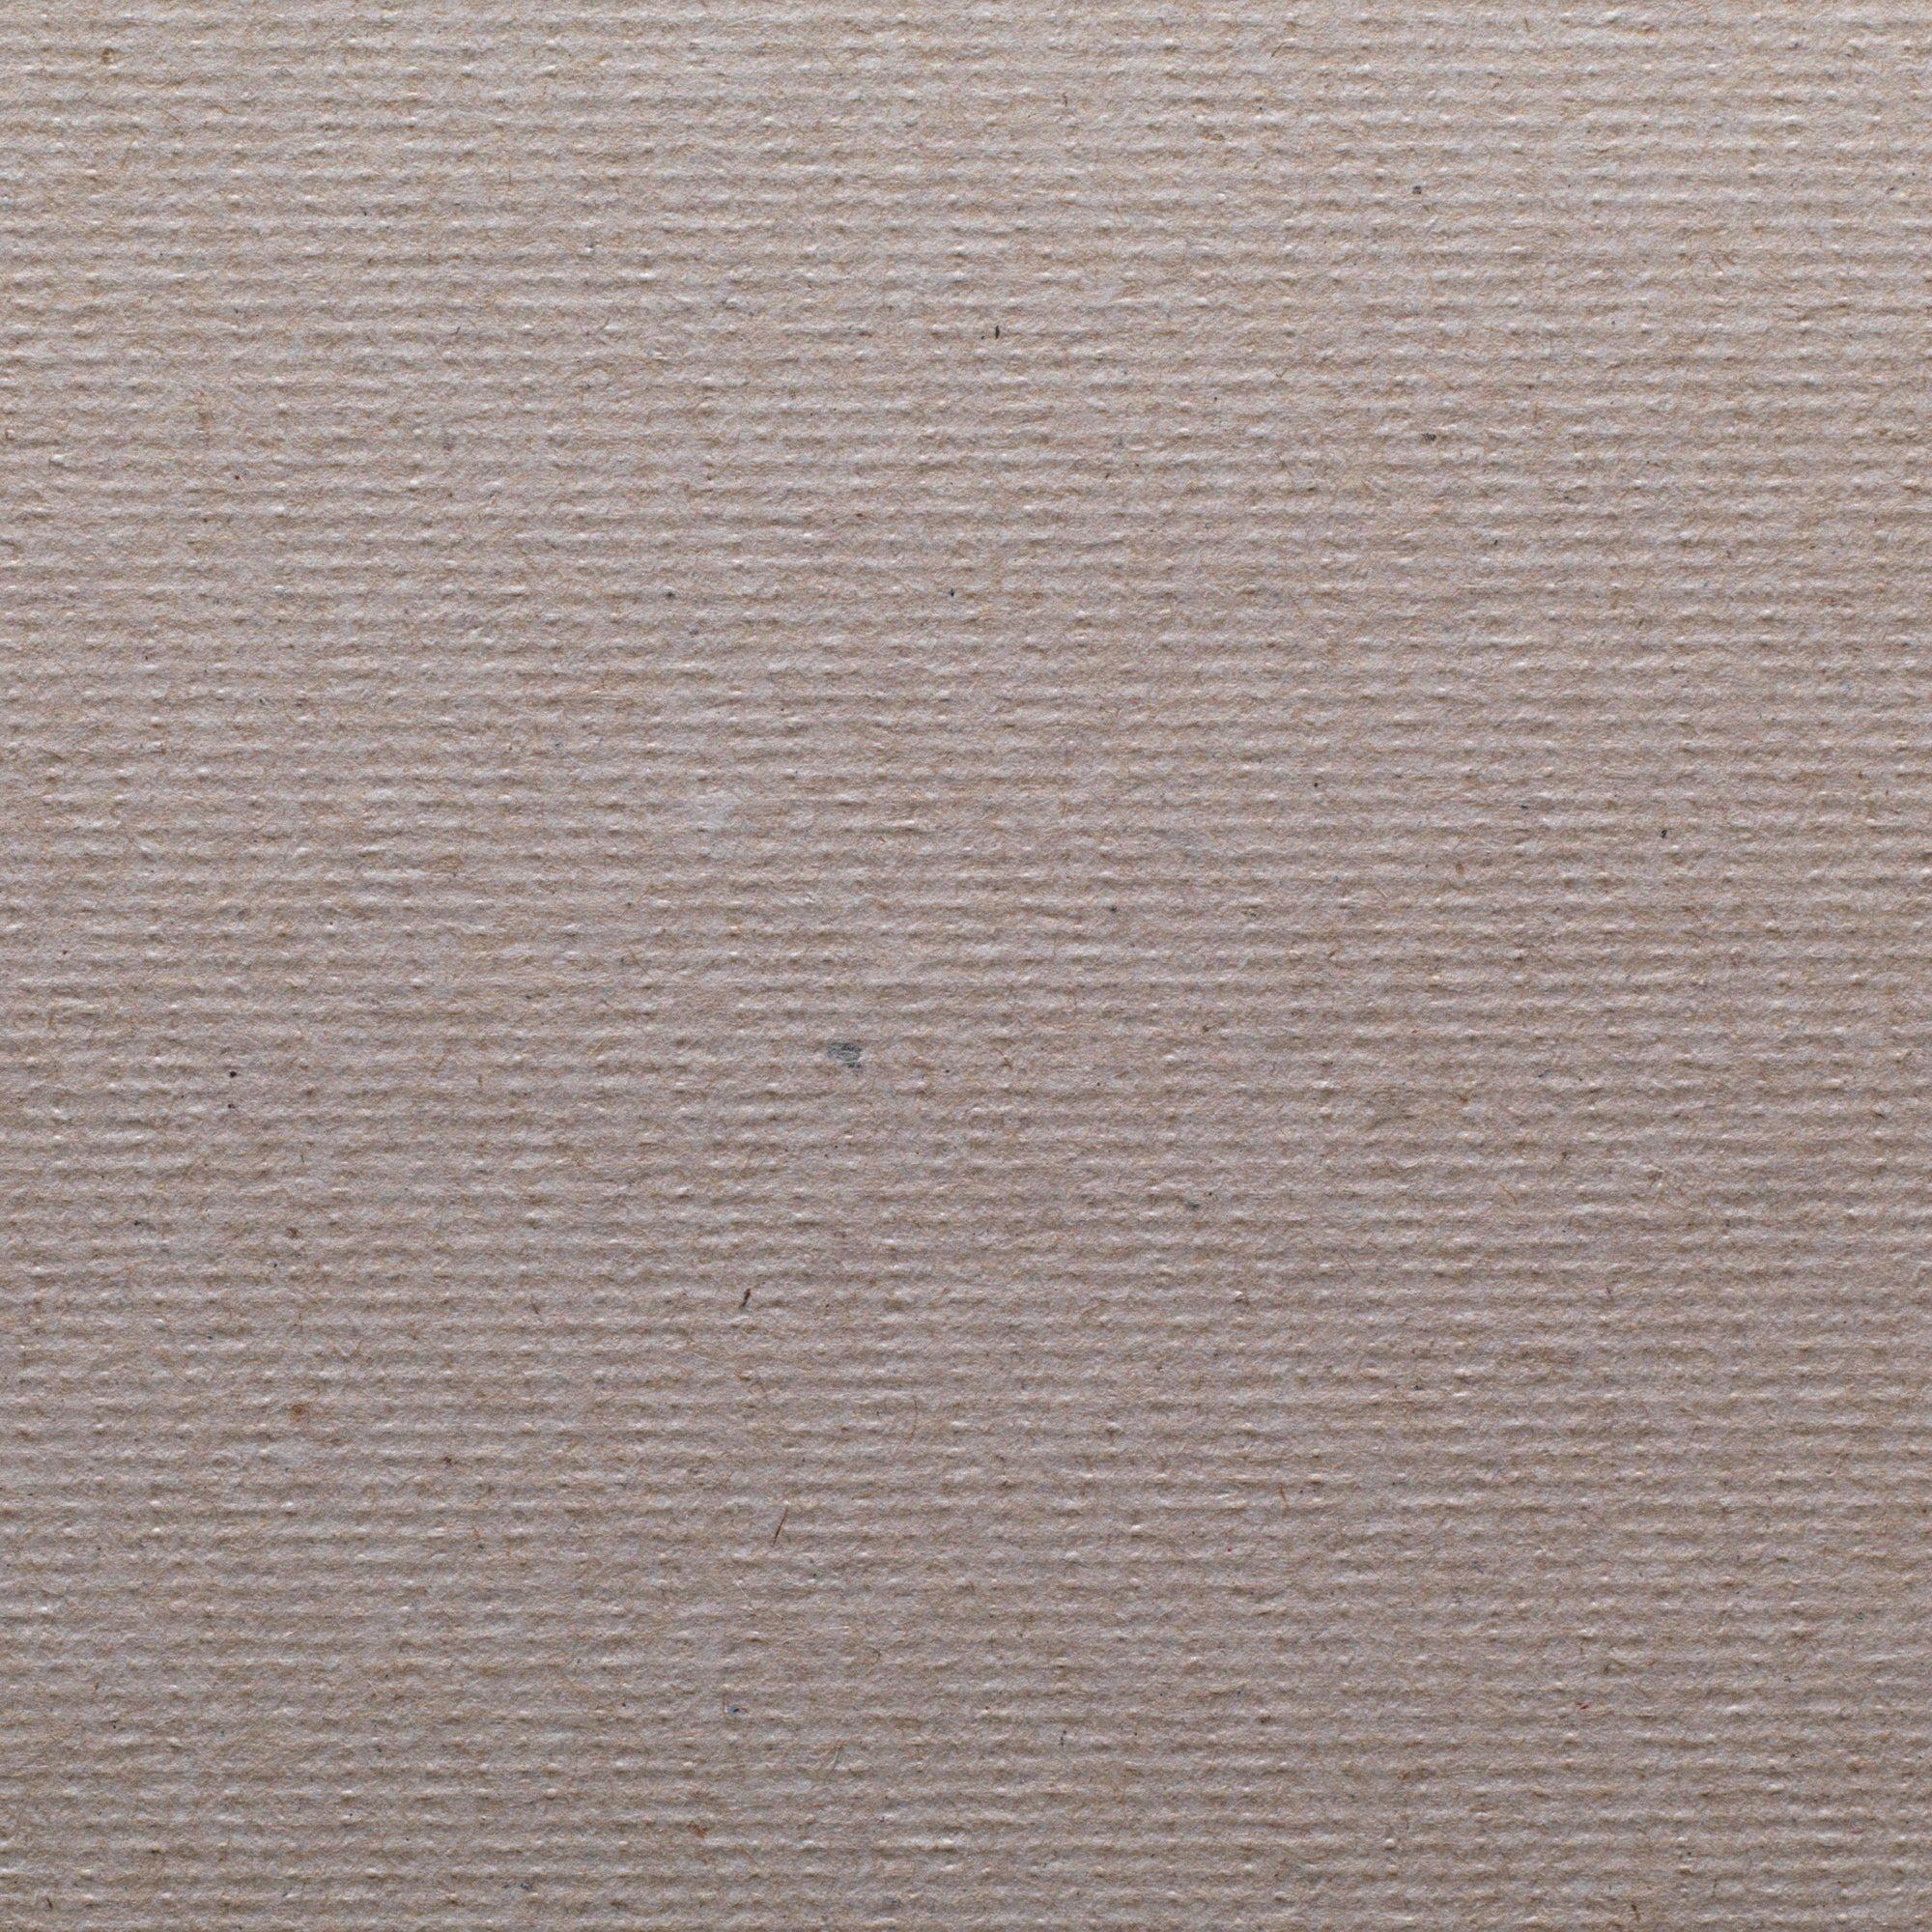 גלילי מגבת נייר ממוחזרים SOFPULL® מבית GP PRO (ג'ורג'יה פסיפיק), חום, (6 גלילים של 304.80 מטרים סהכ 1,828.80 מטרים)